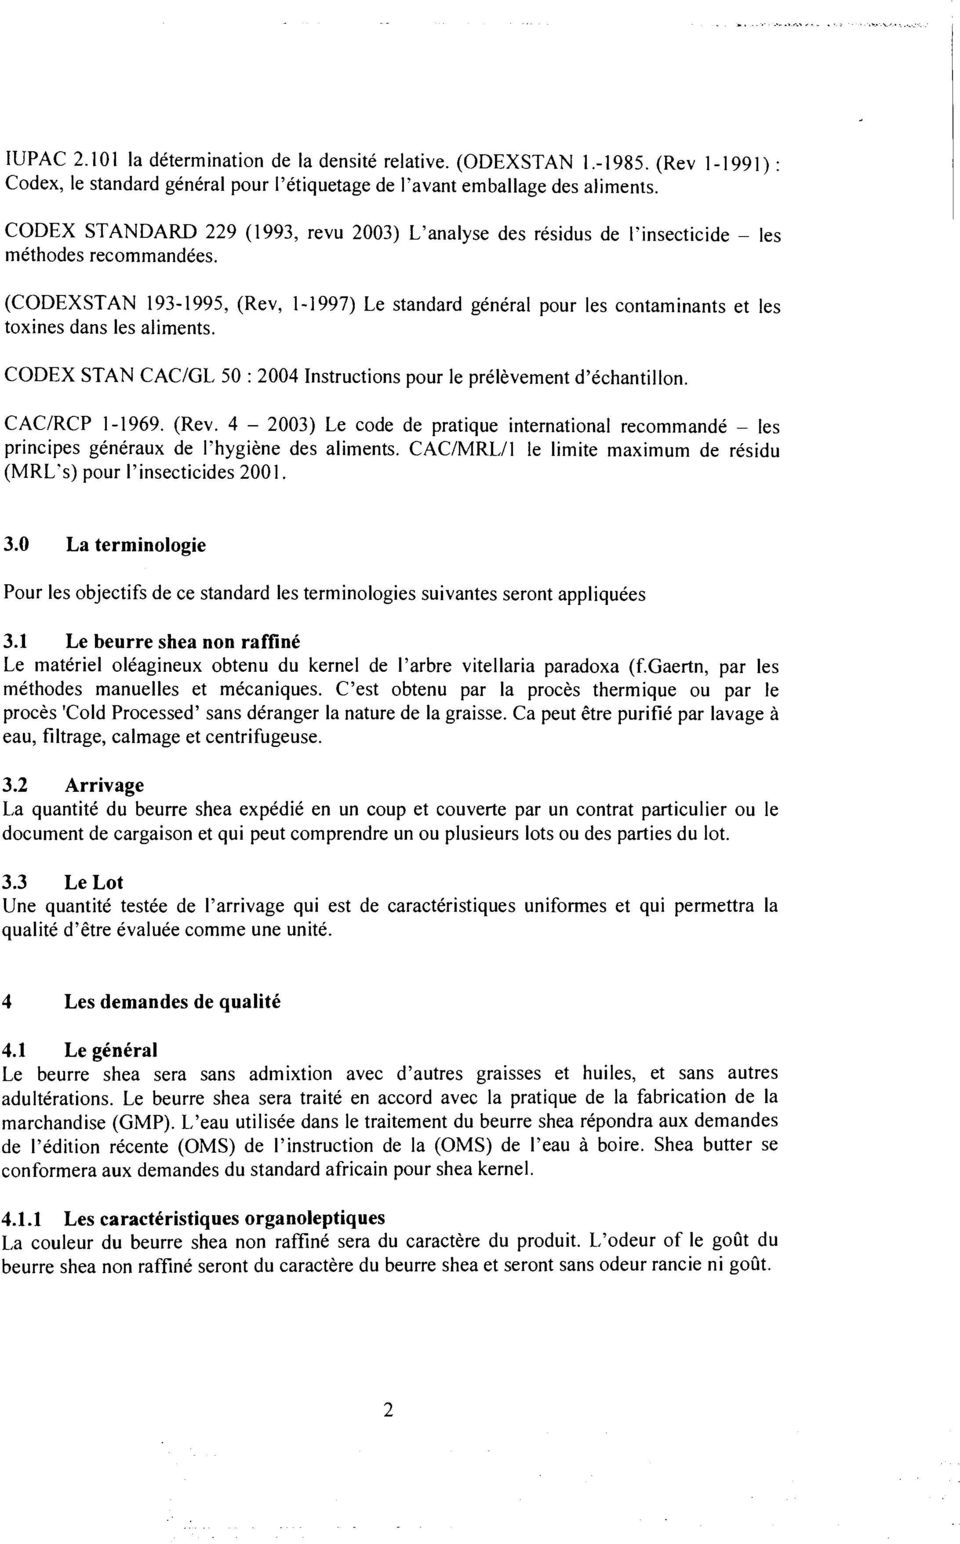 (CODEXSTAN 193-1995, (Rev, 1-1997) Le standard general pour les contaminants et les toxines dans les aliments. CODEX STAN CAC/GL 50 : 2004 Instructions pour le prelevement d'echantillon.